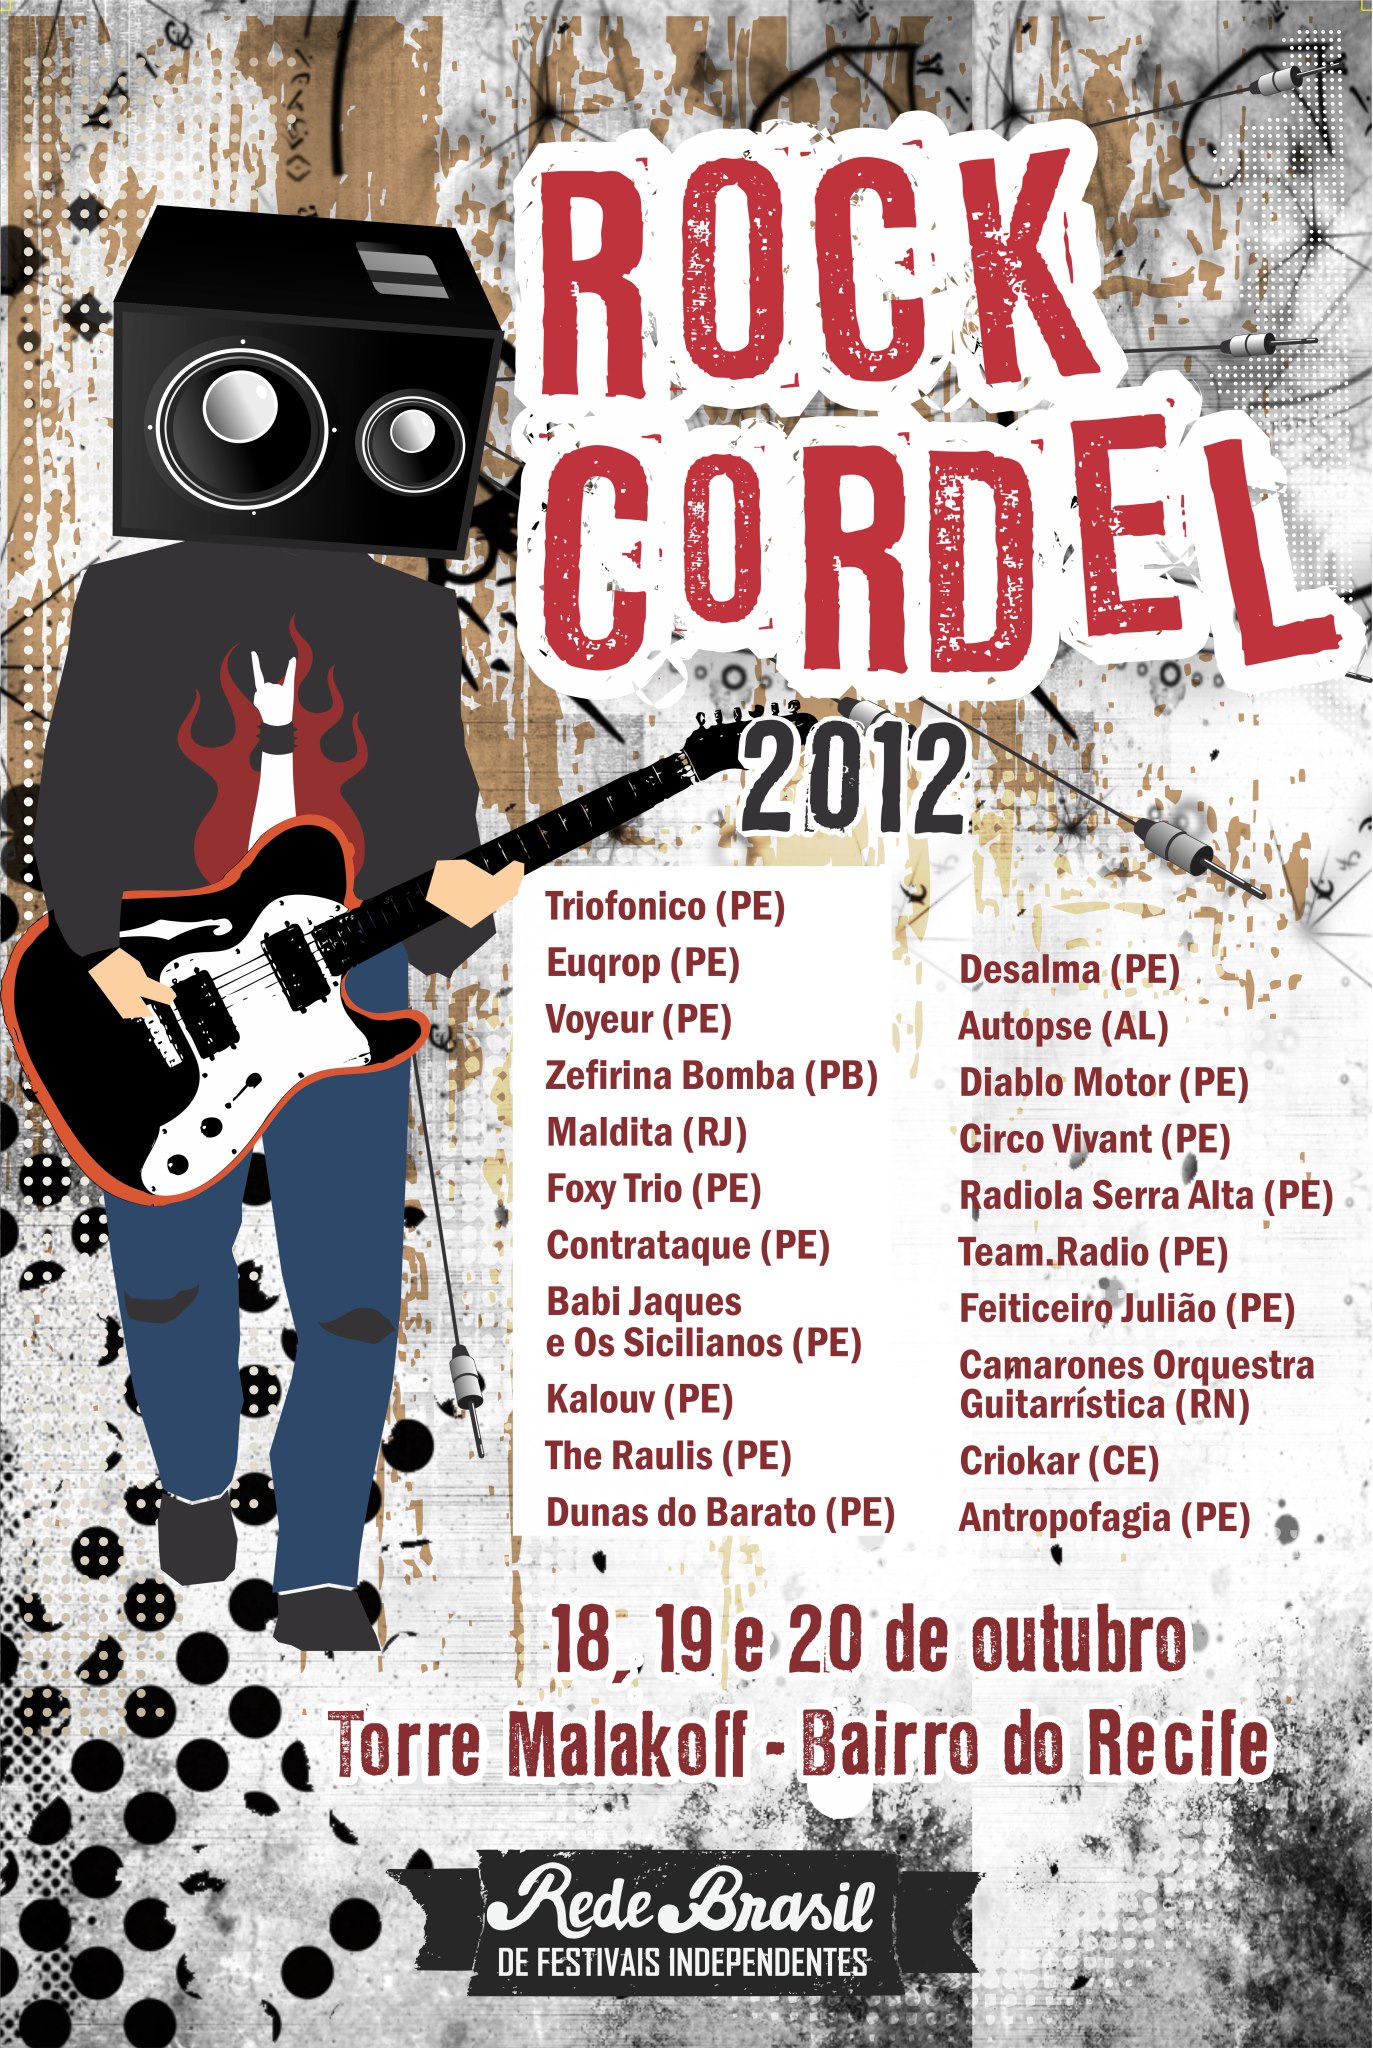 Confira as atrações do Festival Rock Cordel Recife